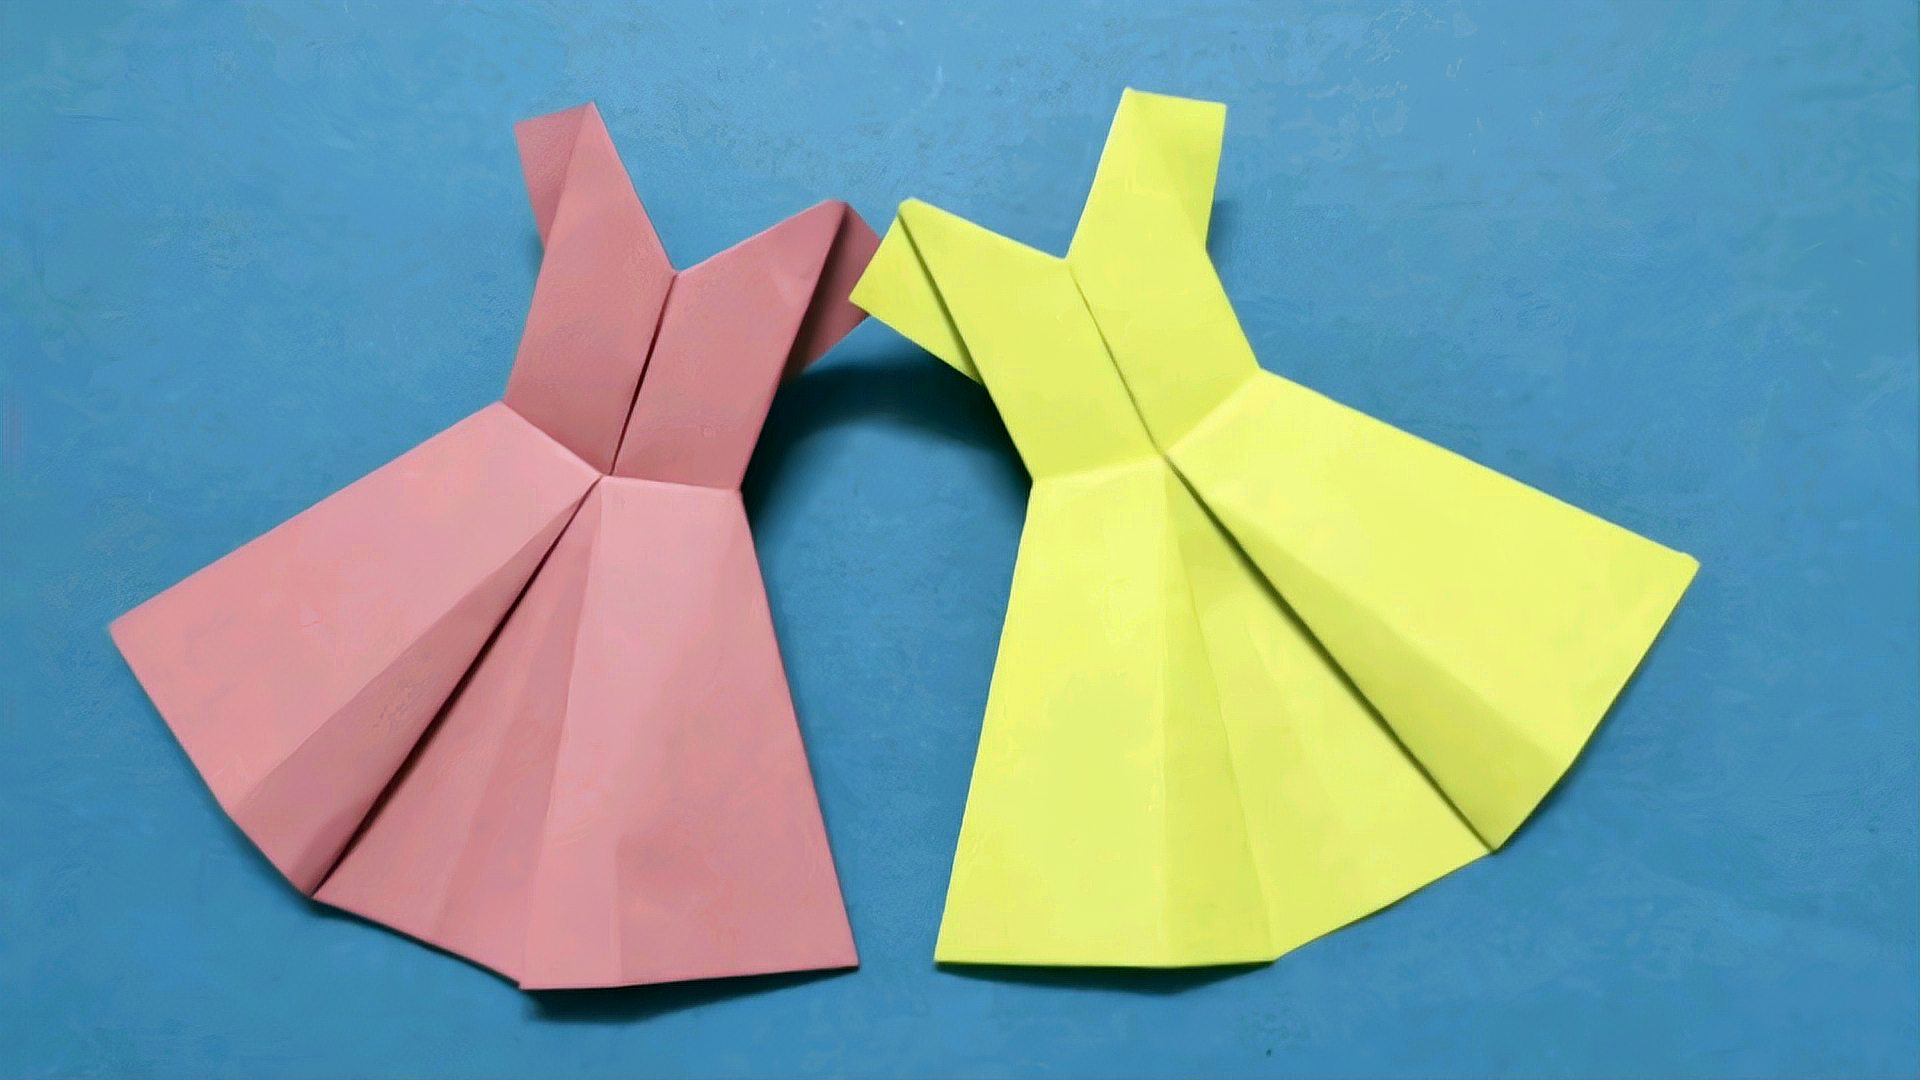 折纸教程,简单易学,小朋友看了都会 服务升级 2女孩们喜欢的礼服裙也